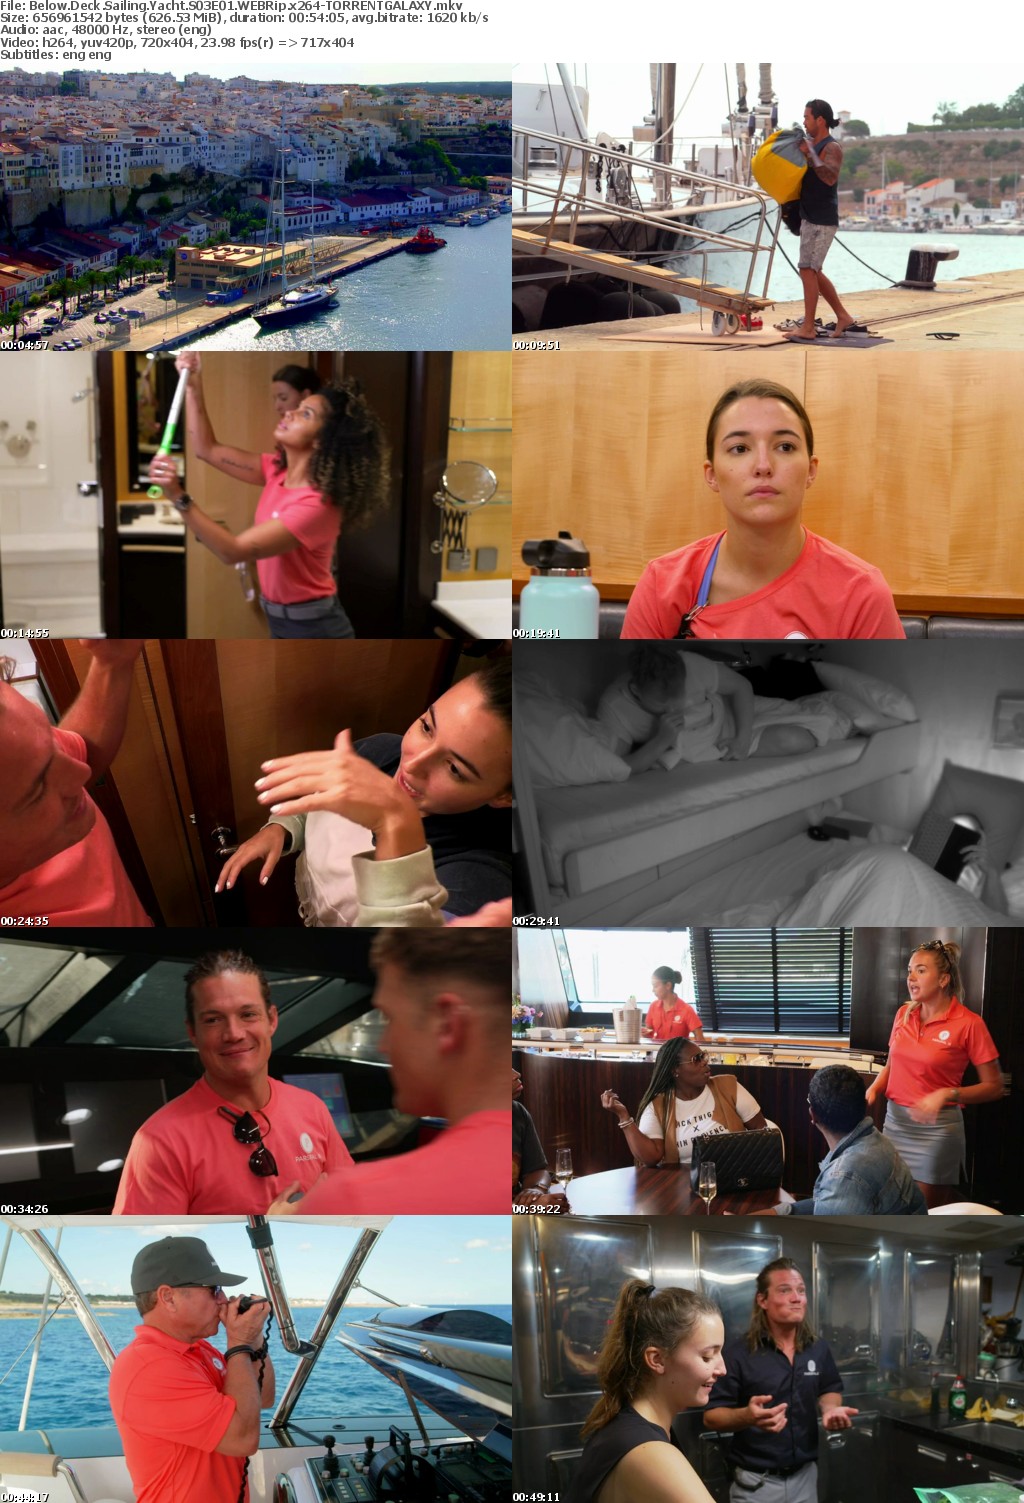 Below Deck Sailing Yacht S03E01 WEBRip x264-GALAXY